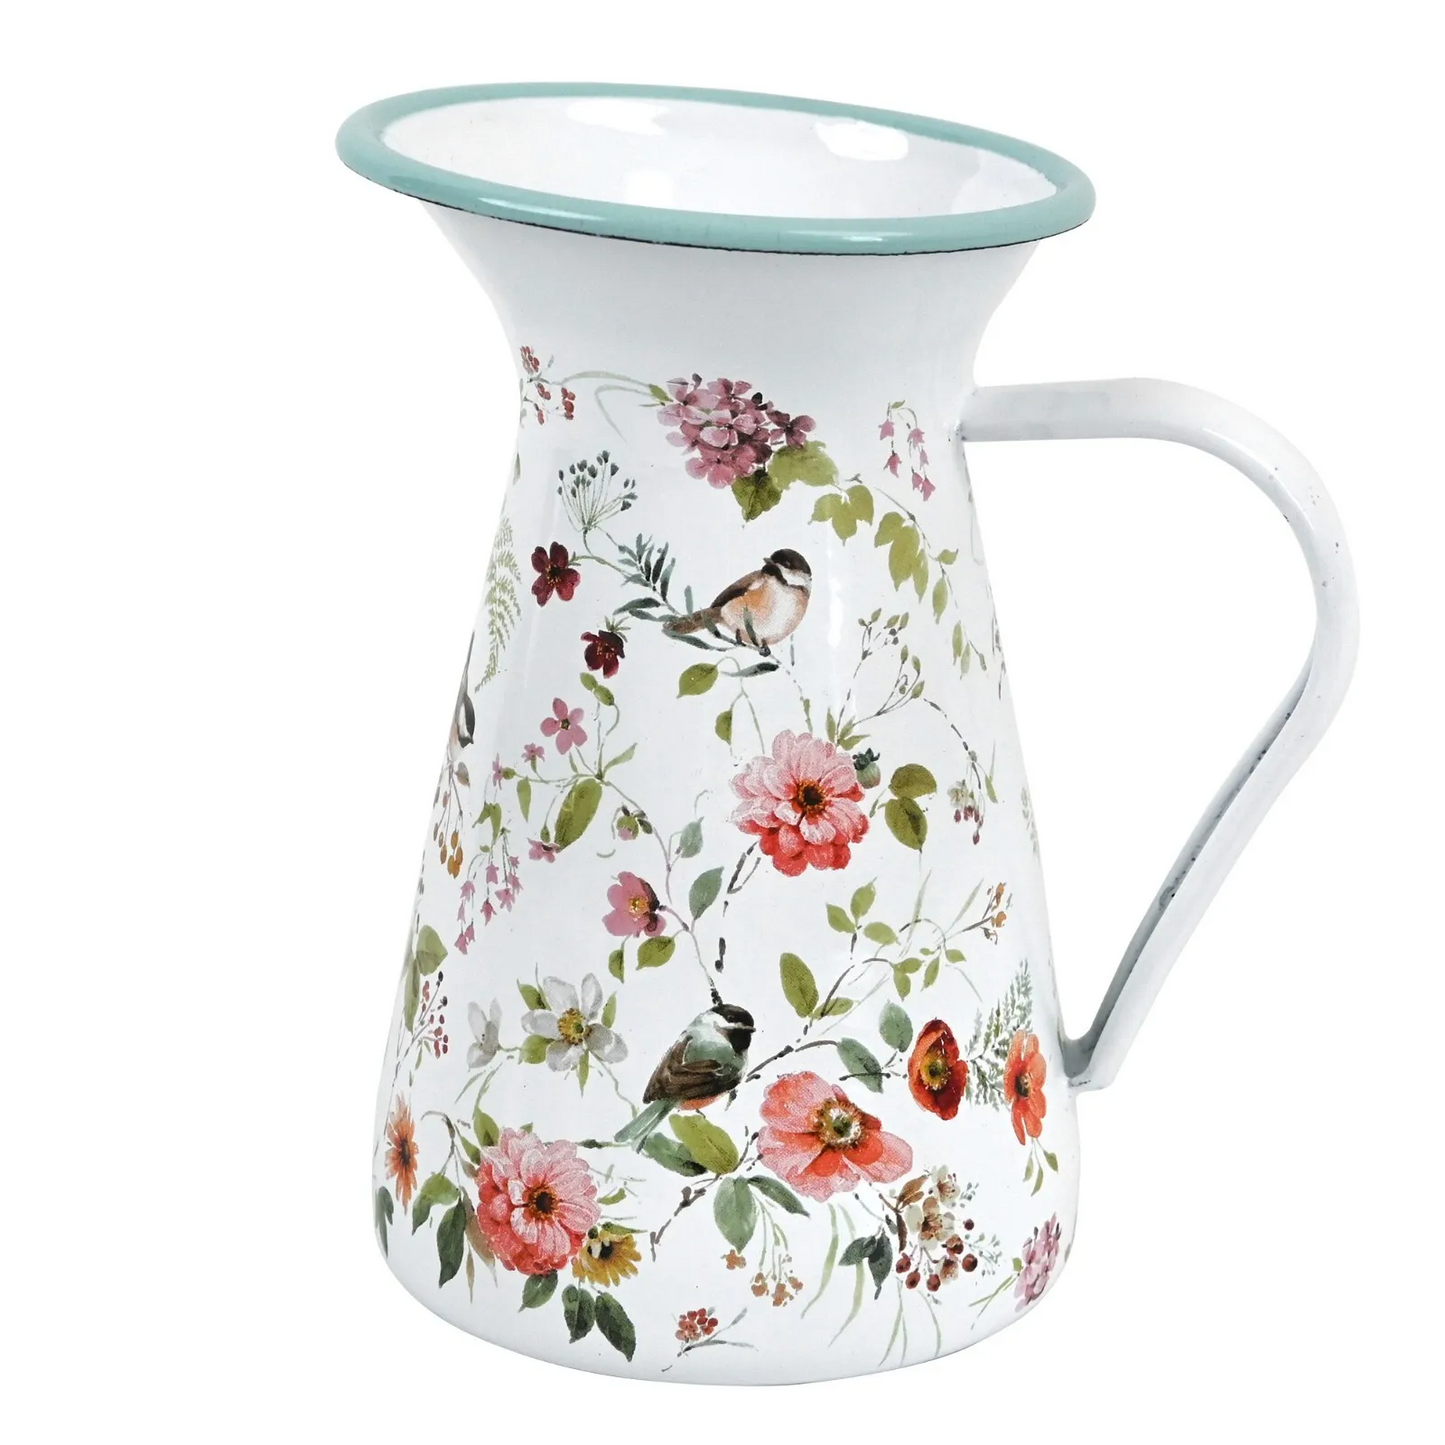 Farmhouse Flower Vase - Decorative Metal Pitcher Milk Jug For Floral Arrangements